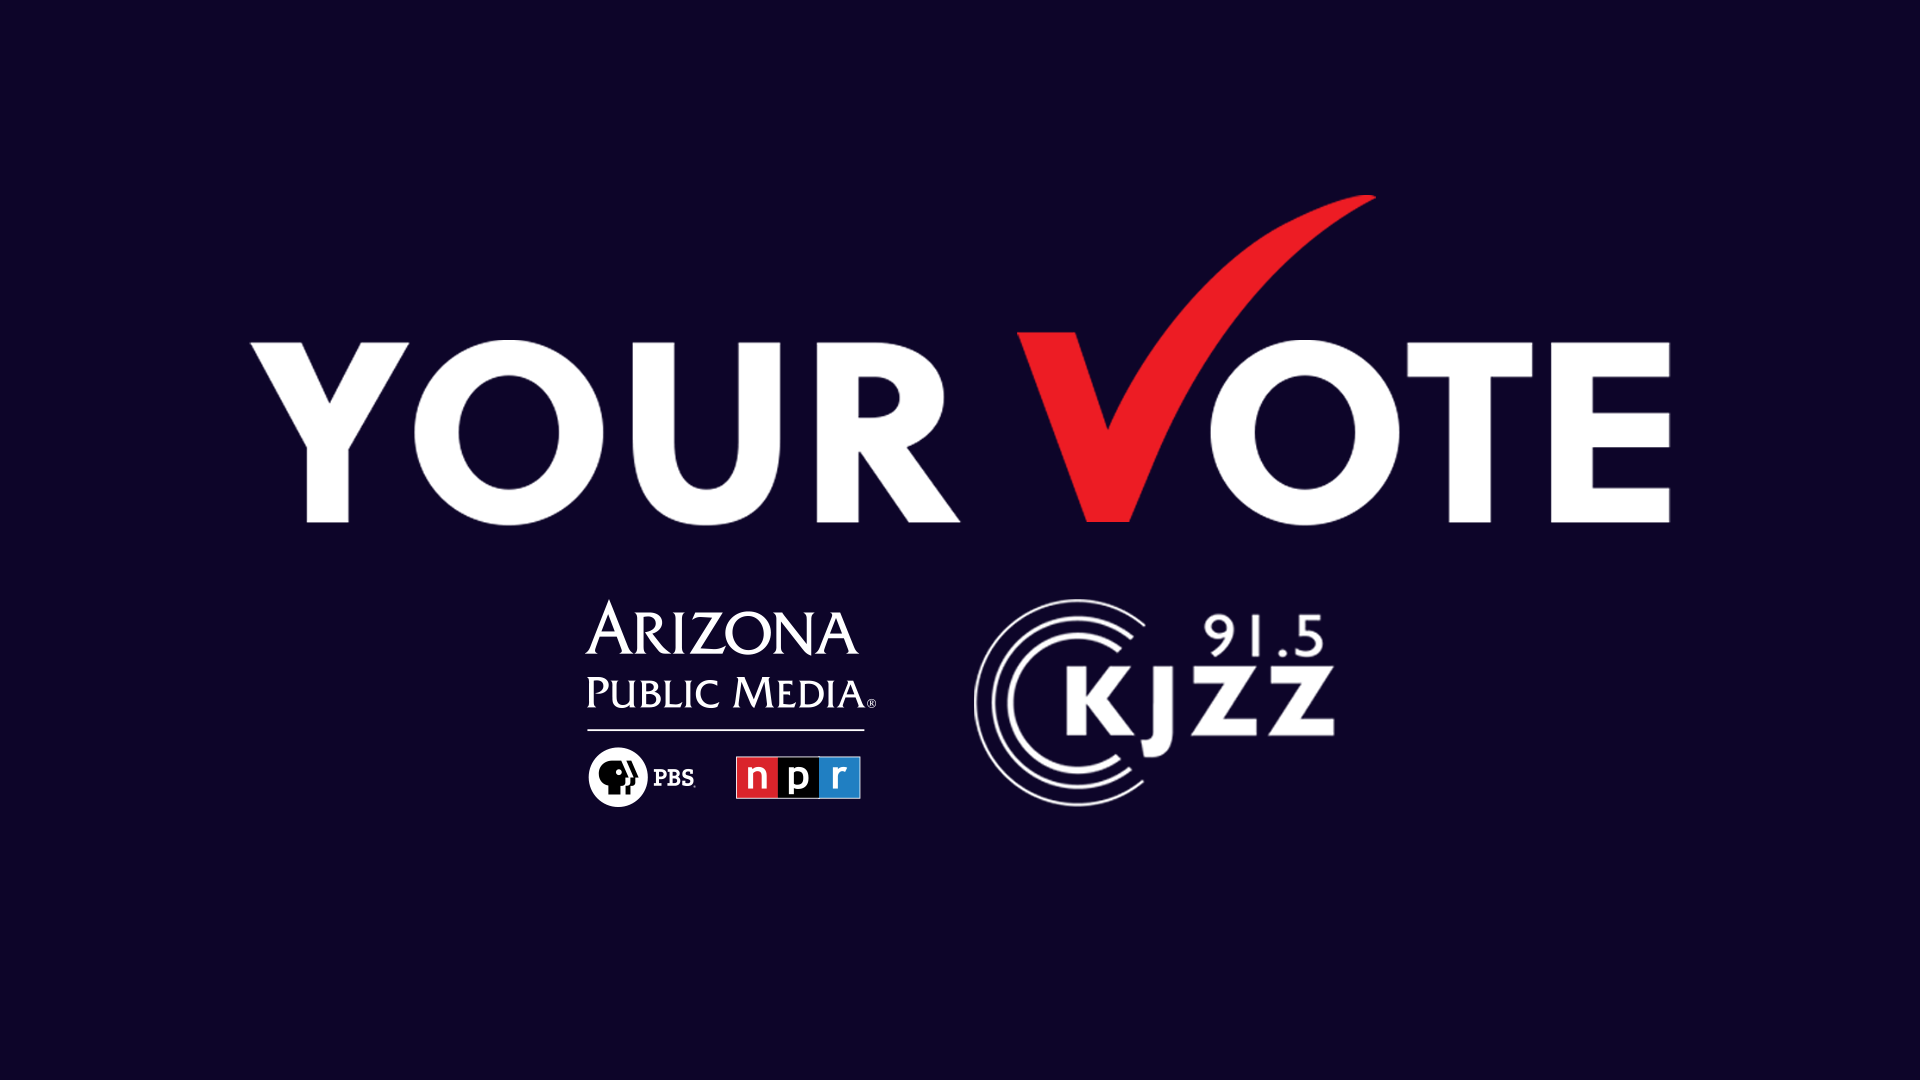 Your Vote 2022 AZPM/KJZZ